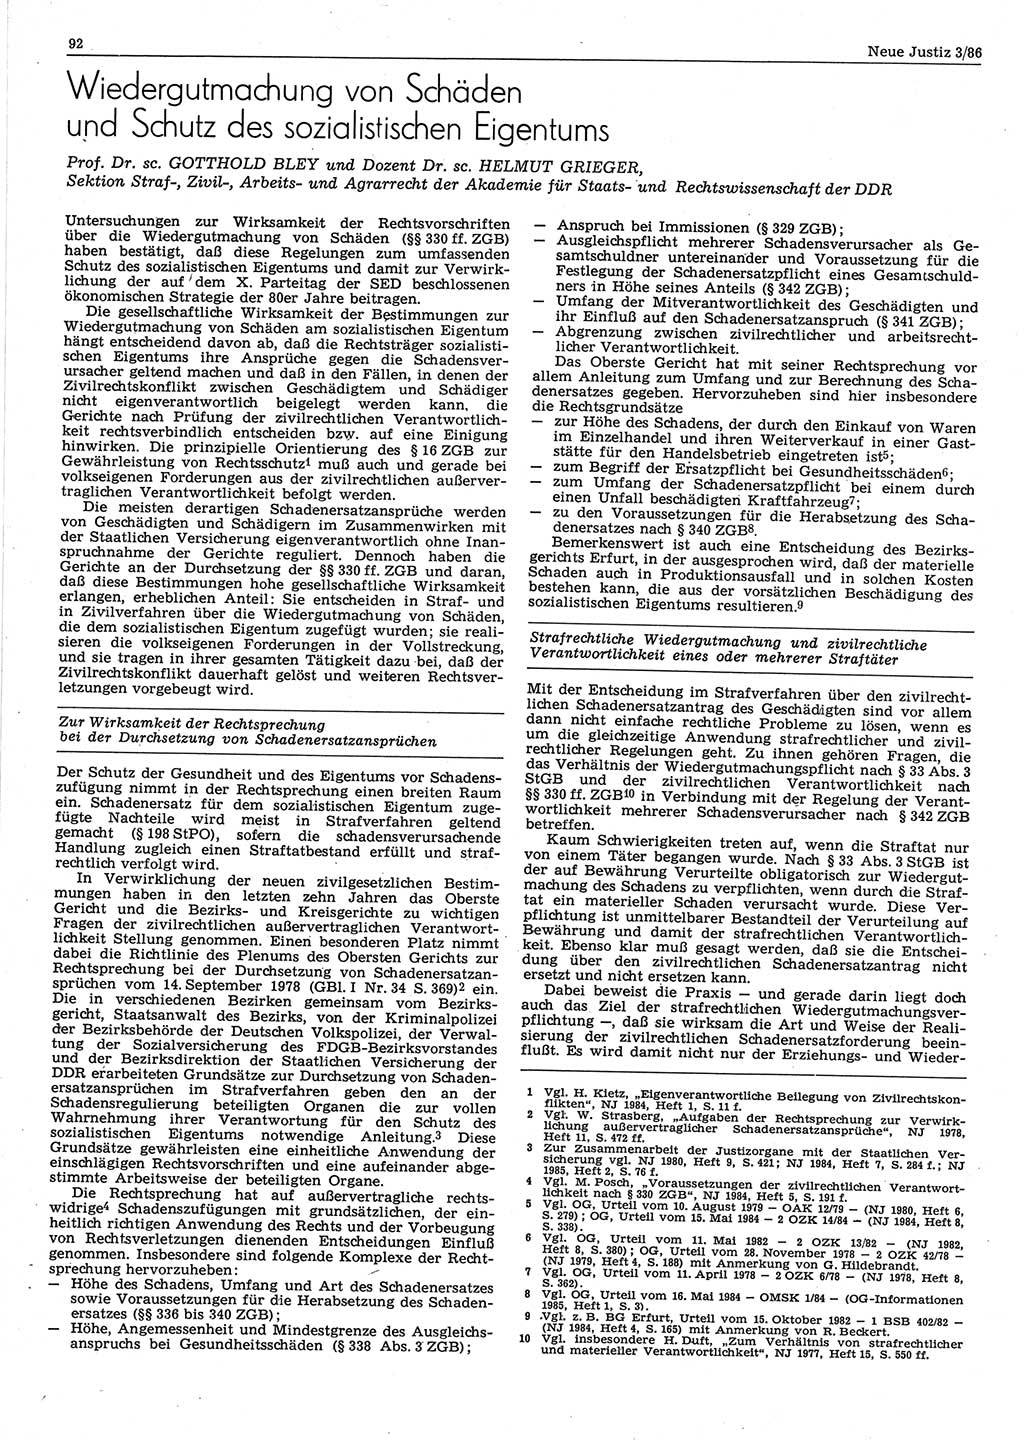 Neue Justiz (NJ), Zeitschrift für sozialistisches Recht und Gesetzlichkeit [Deutsche Demokratische Republik (DDR)], 40. Jahrgang 1986, Seite 92 (NJ DDR 1986, S. 92)